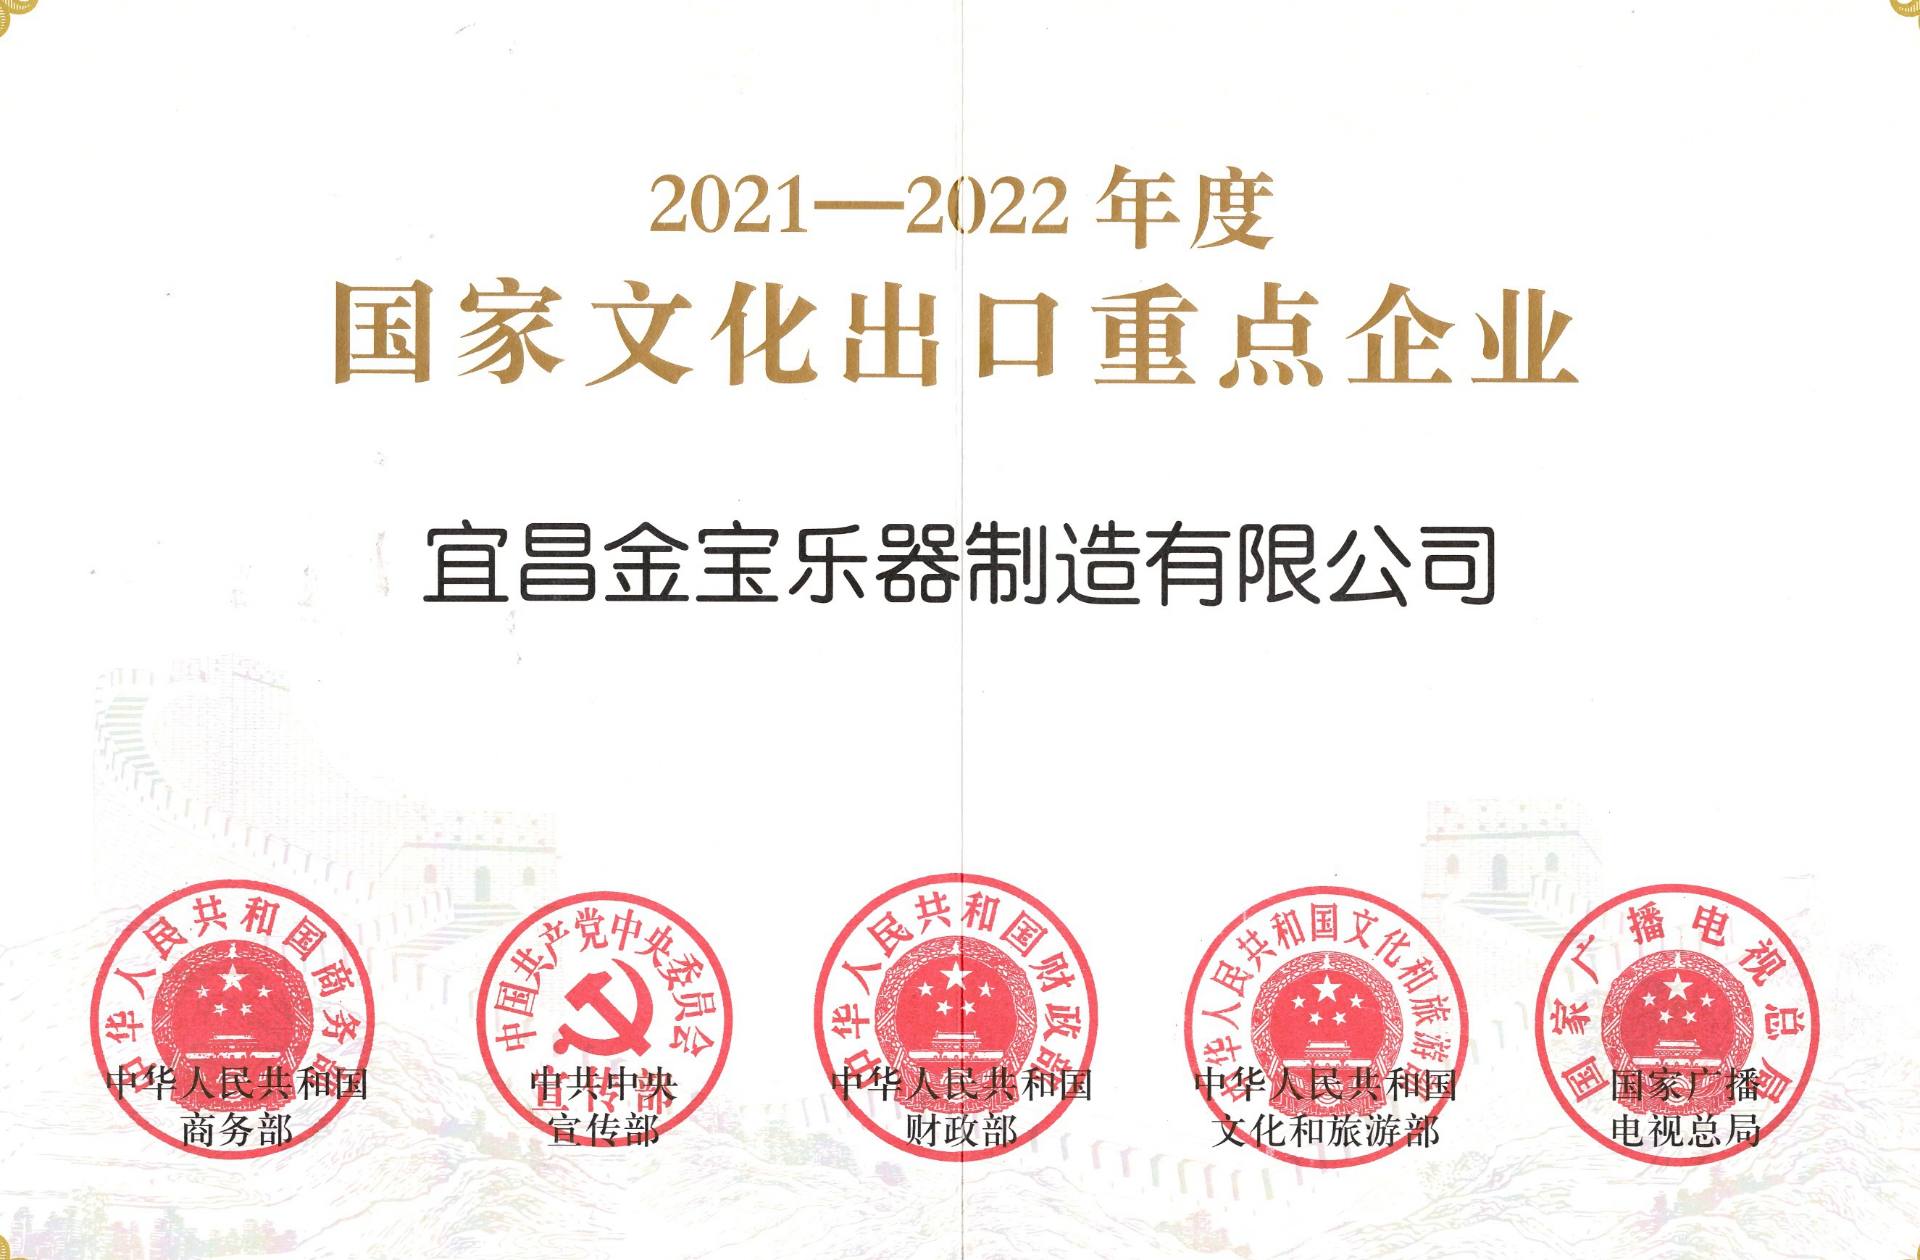 喜讯丨宜昌金宝乐器制造有限公司被认定为2021-2022年度国家文化出口重点企业！